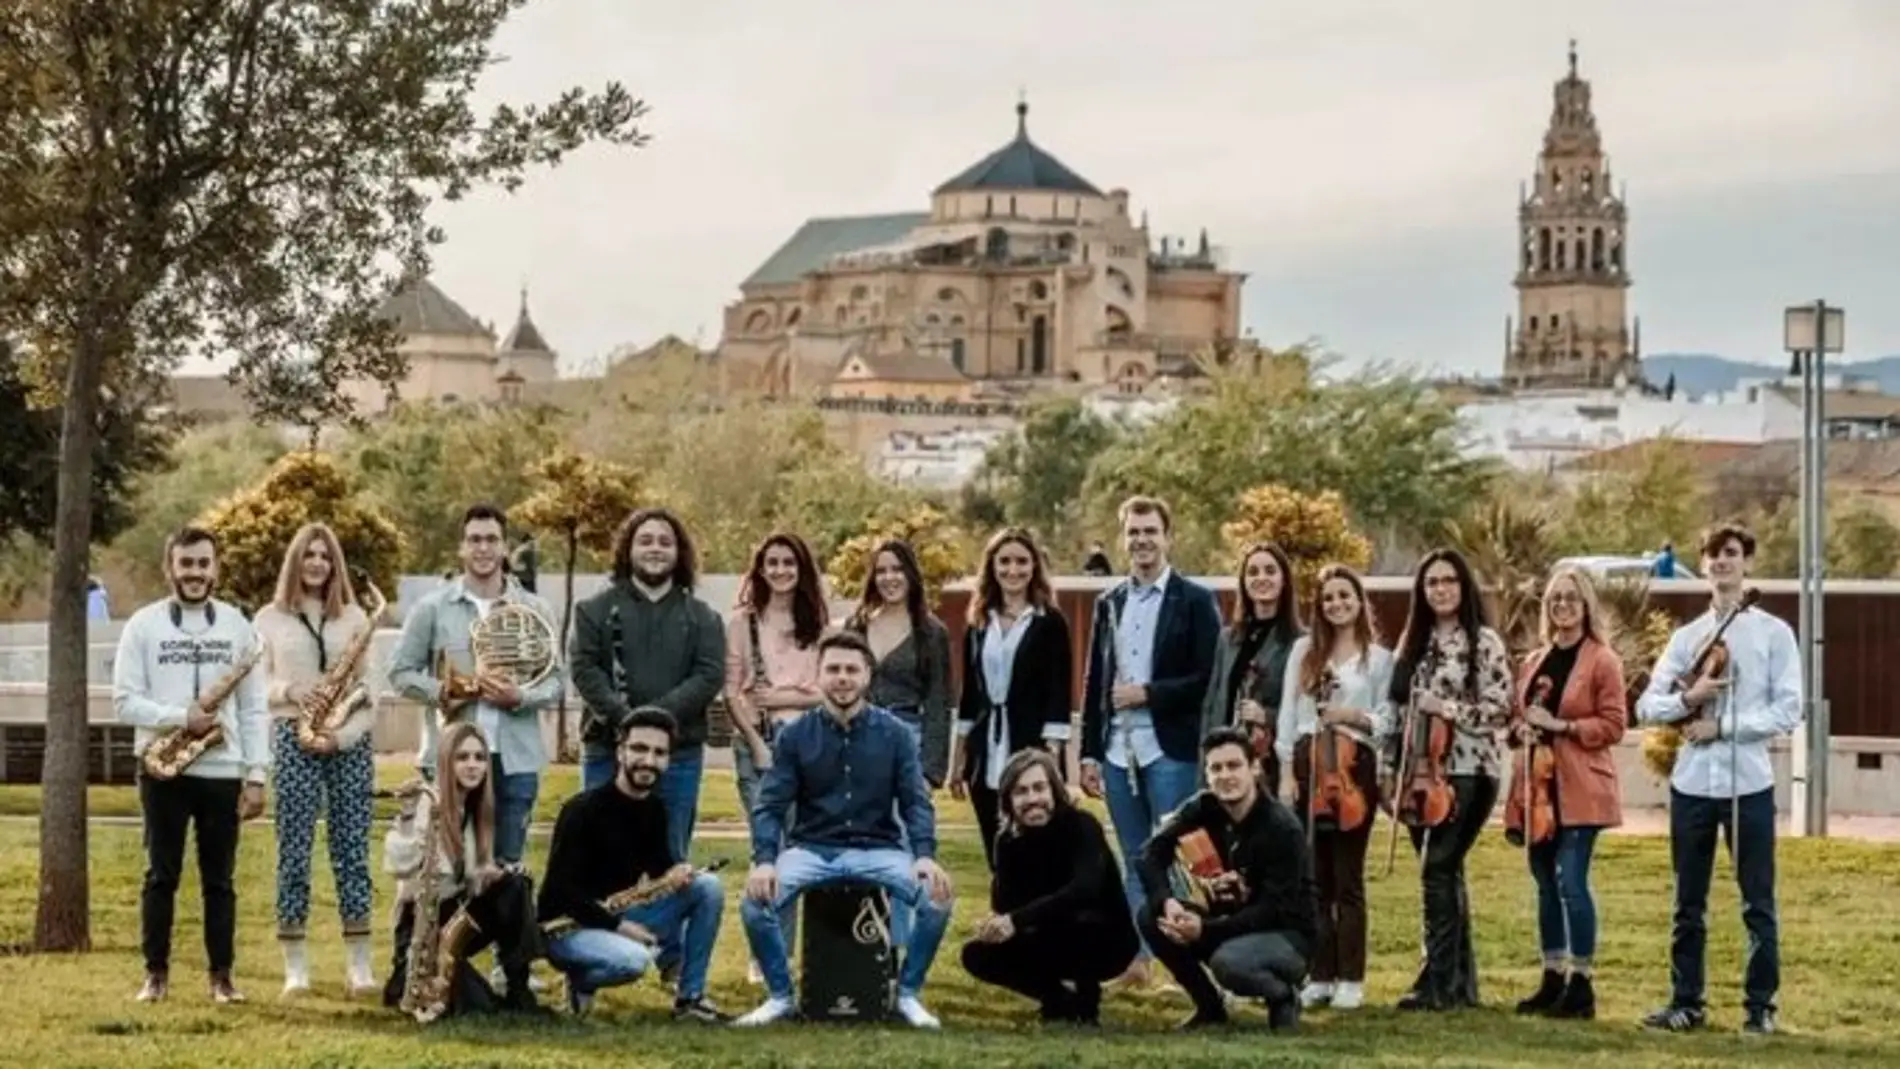 La Orquesta Sinfónica Flamenca de España se presentará en sociedad en la Fundación Cajasol en Córdoba